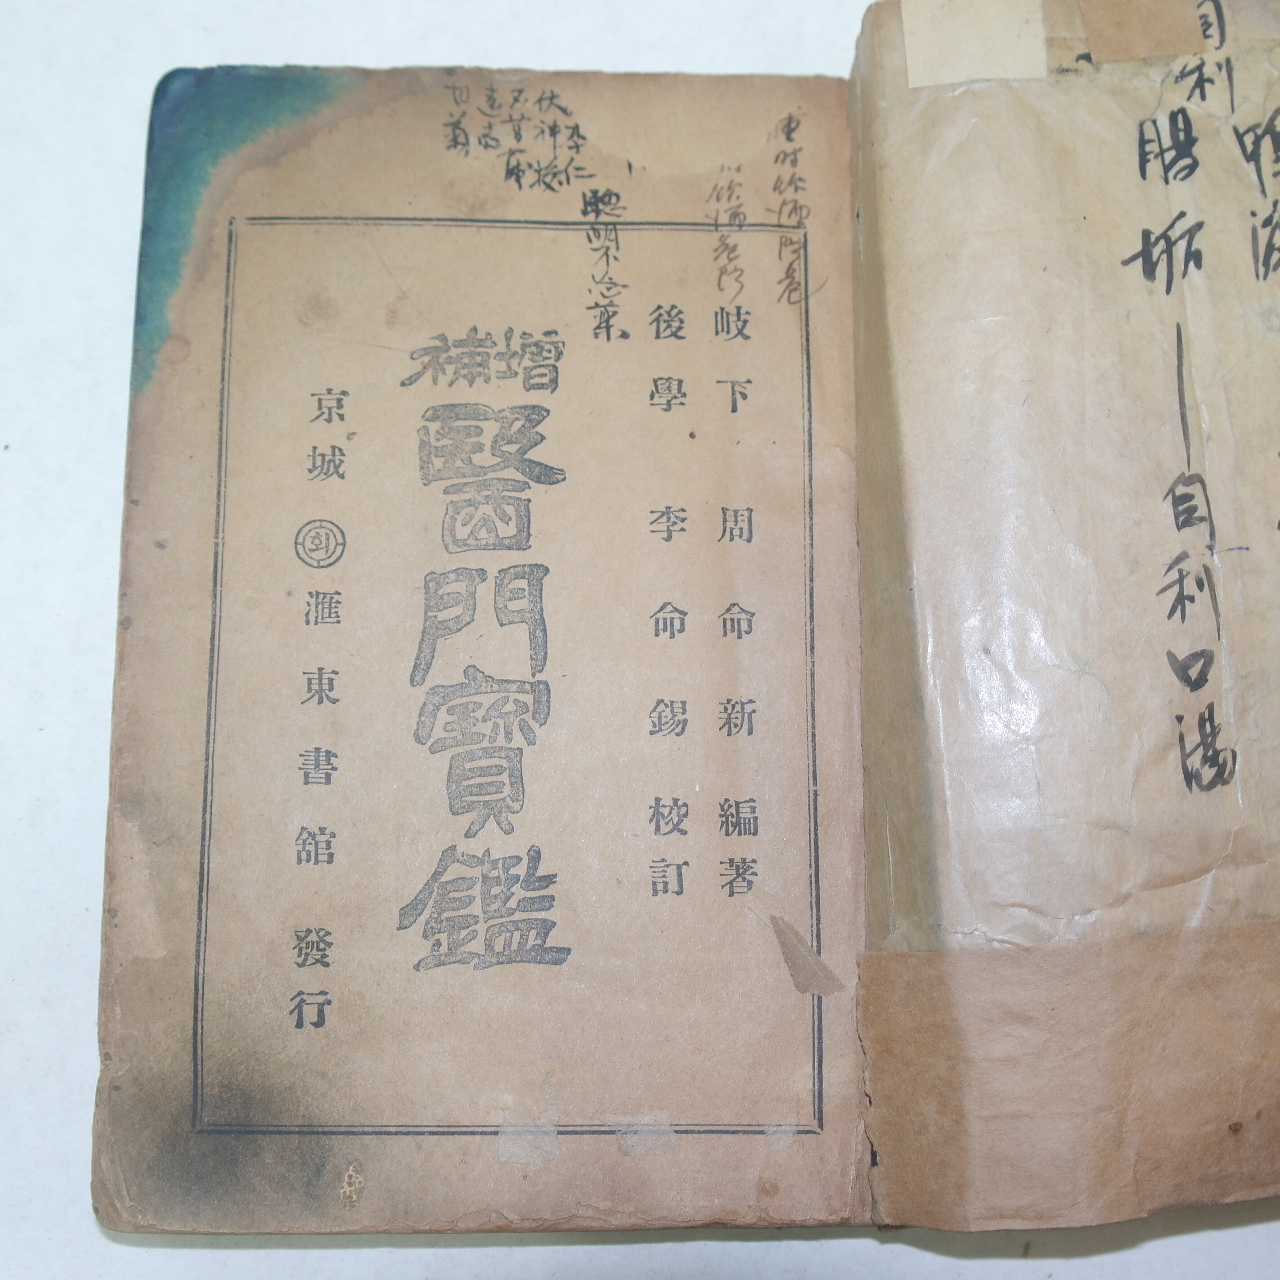 1943년 경성덕흥서림간행 척독대감(尺牘大鑑) 1책완질